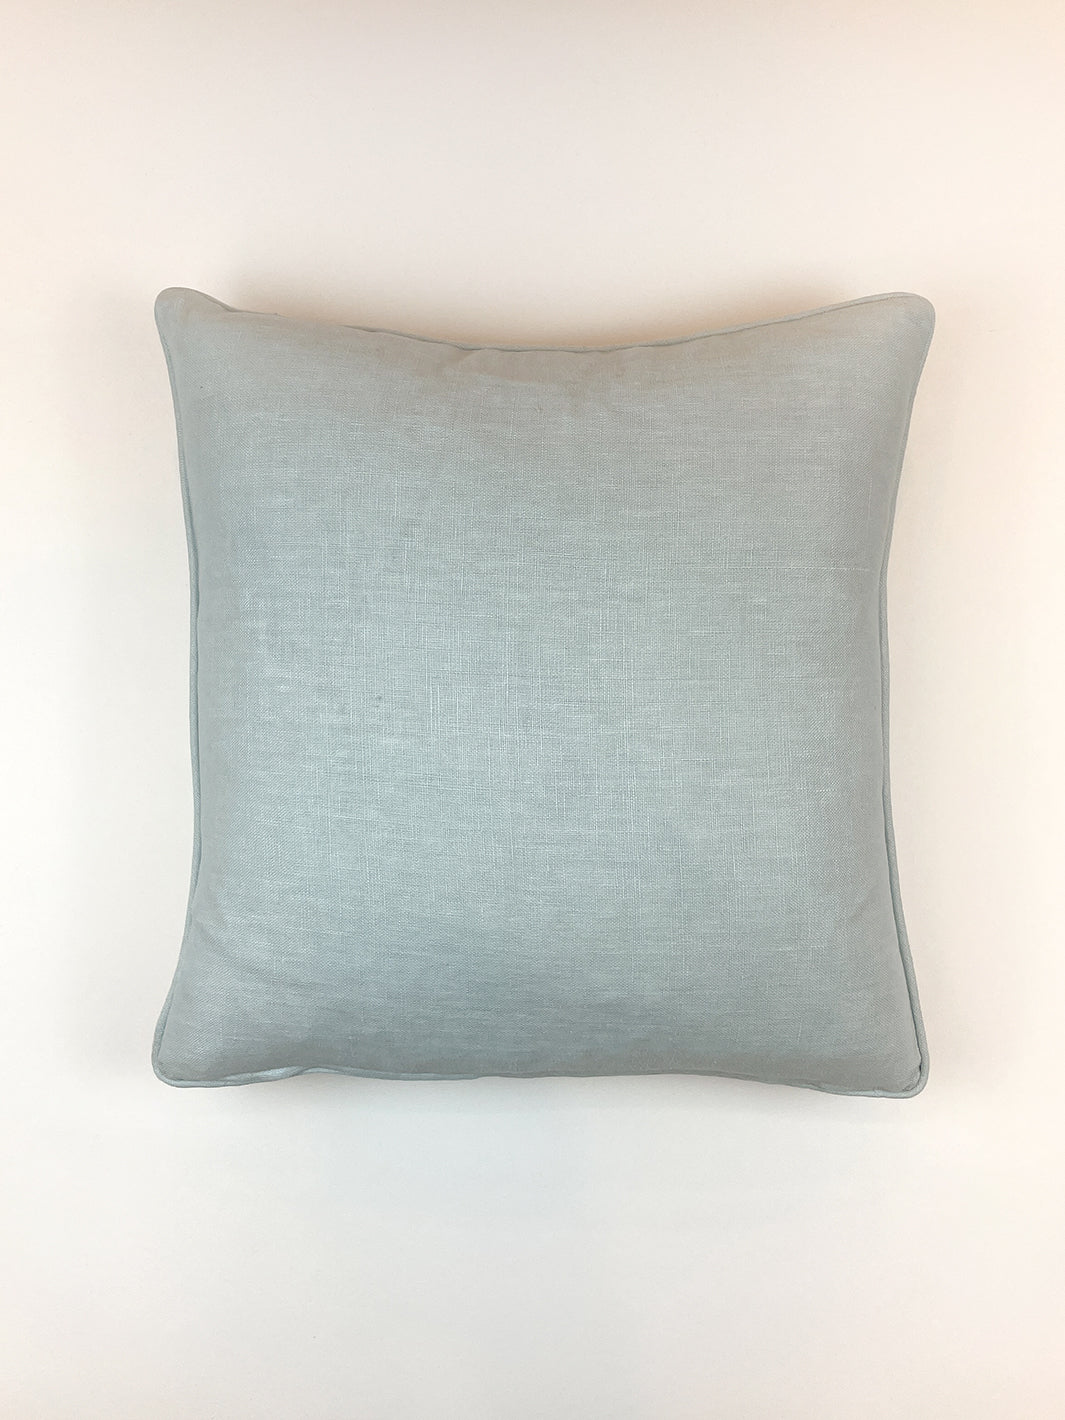 'Solid Throw Pillow - Light Blue on Linen